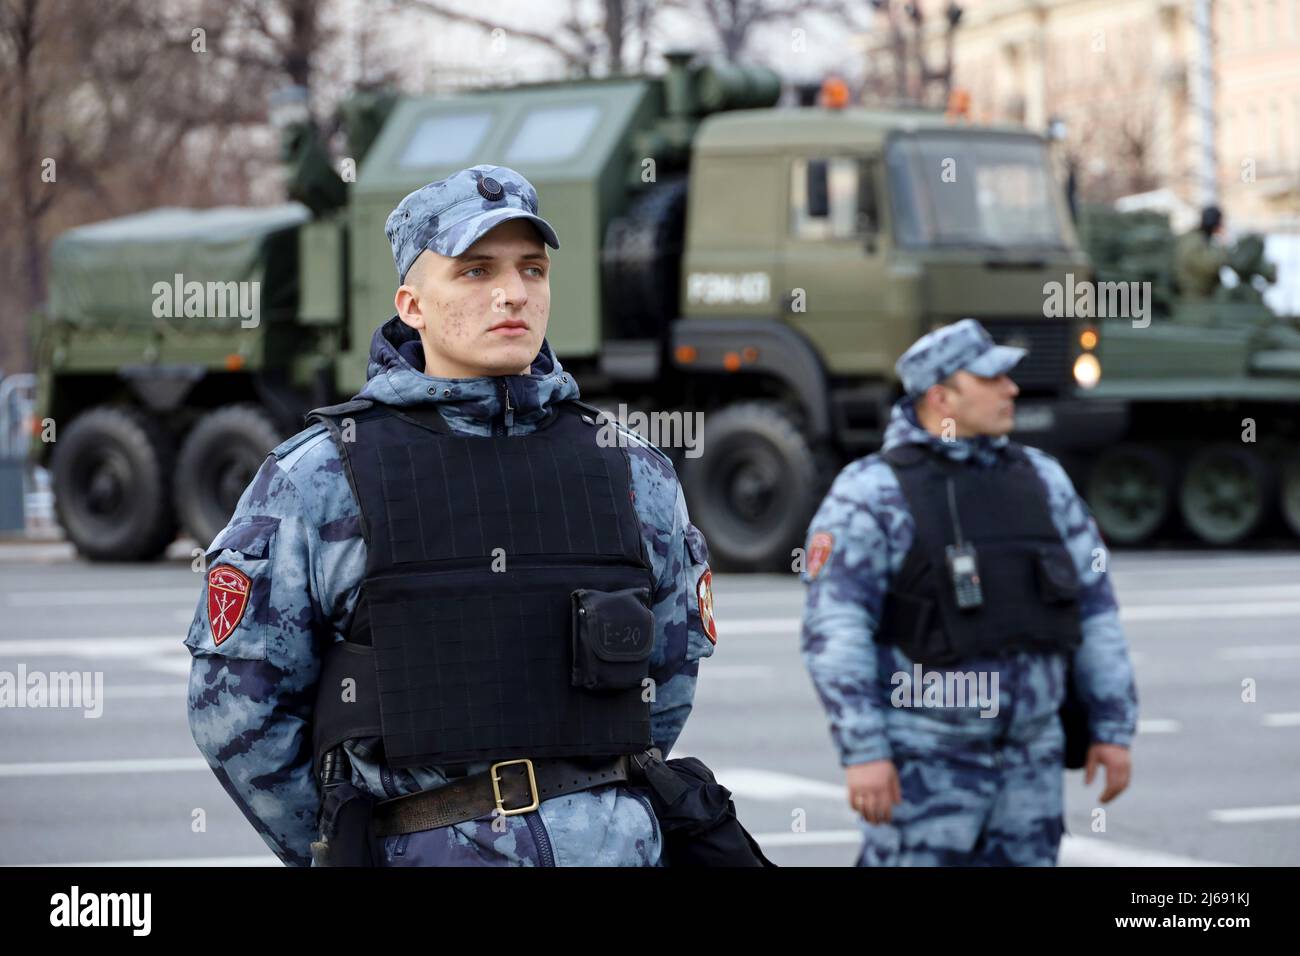 Soldaten der russischen Streitkräfte der Nationalgarde in kugelsicherer Weste, die auf dem Hintergrund des gepanzerten Fahrzeugs stehen Stockfoto